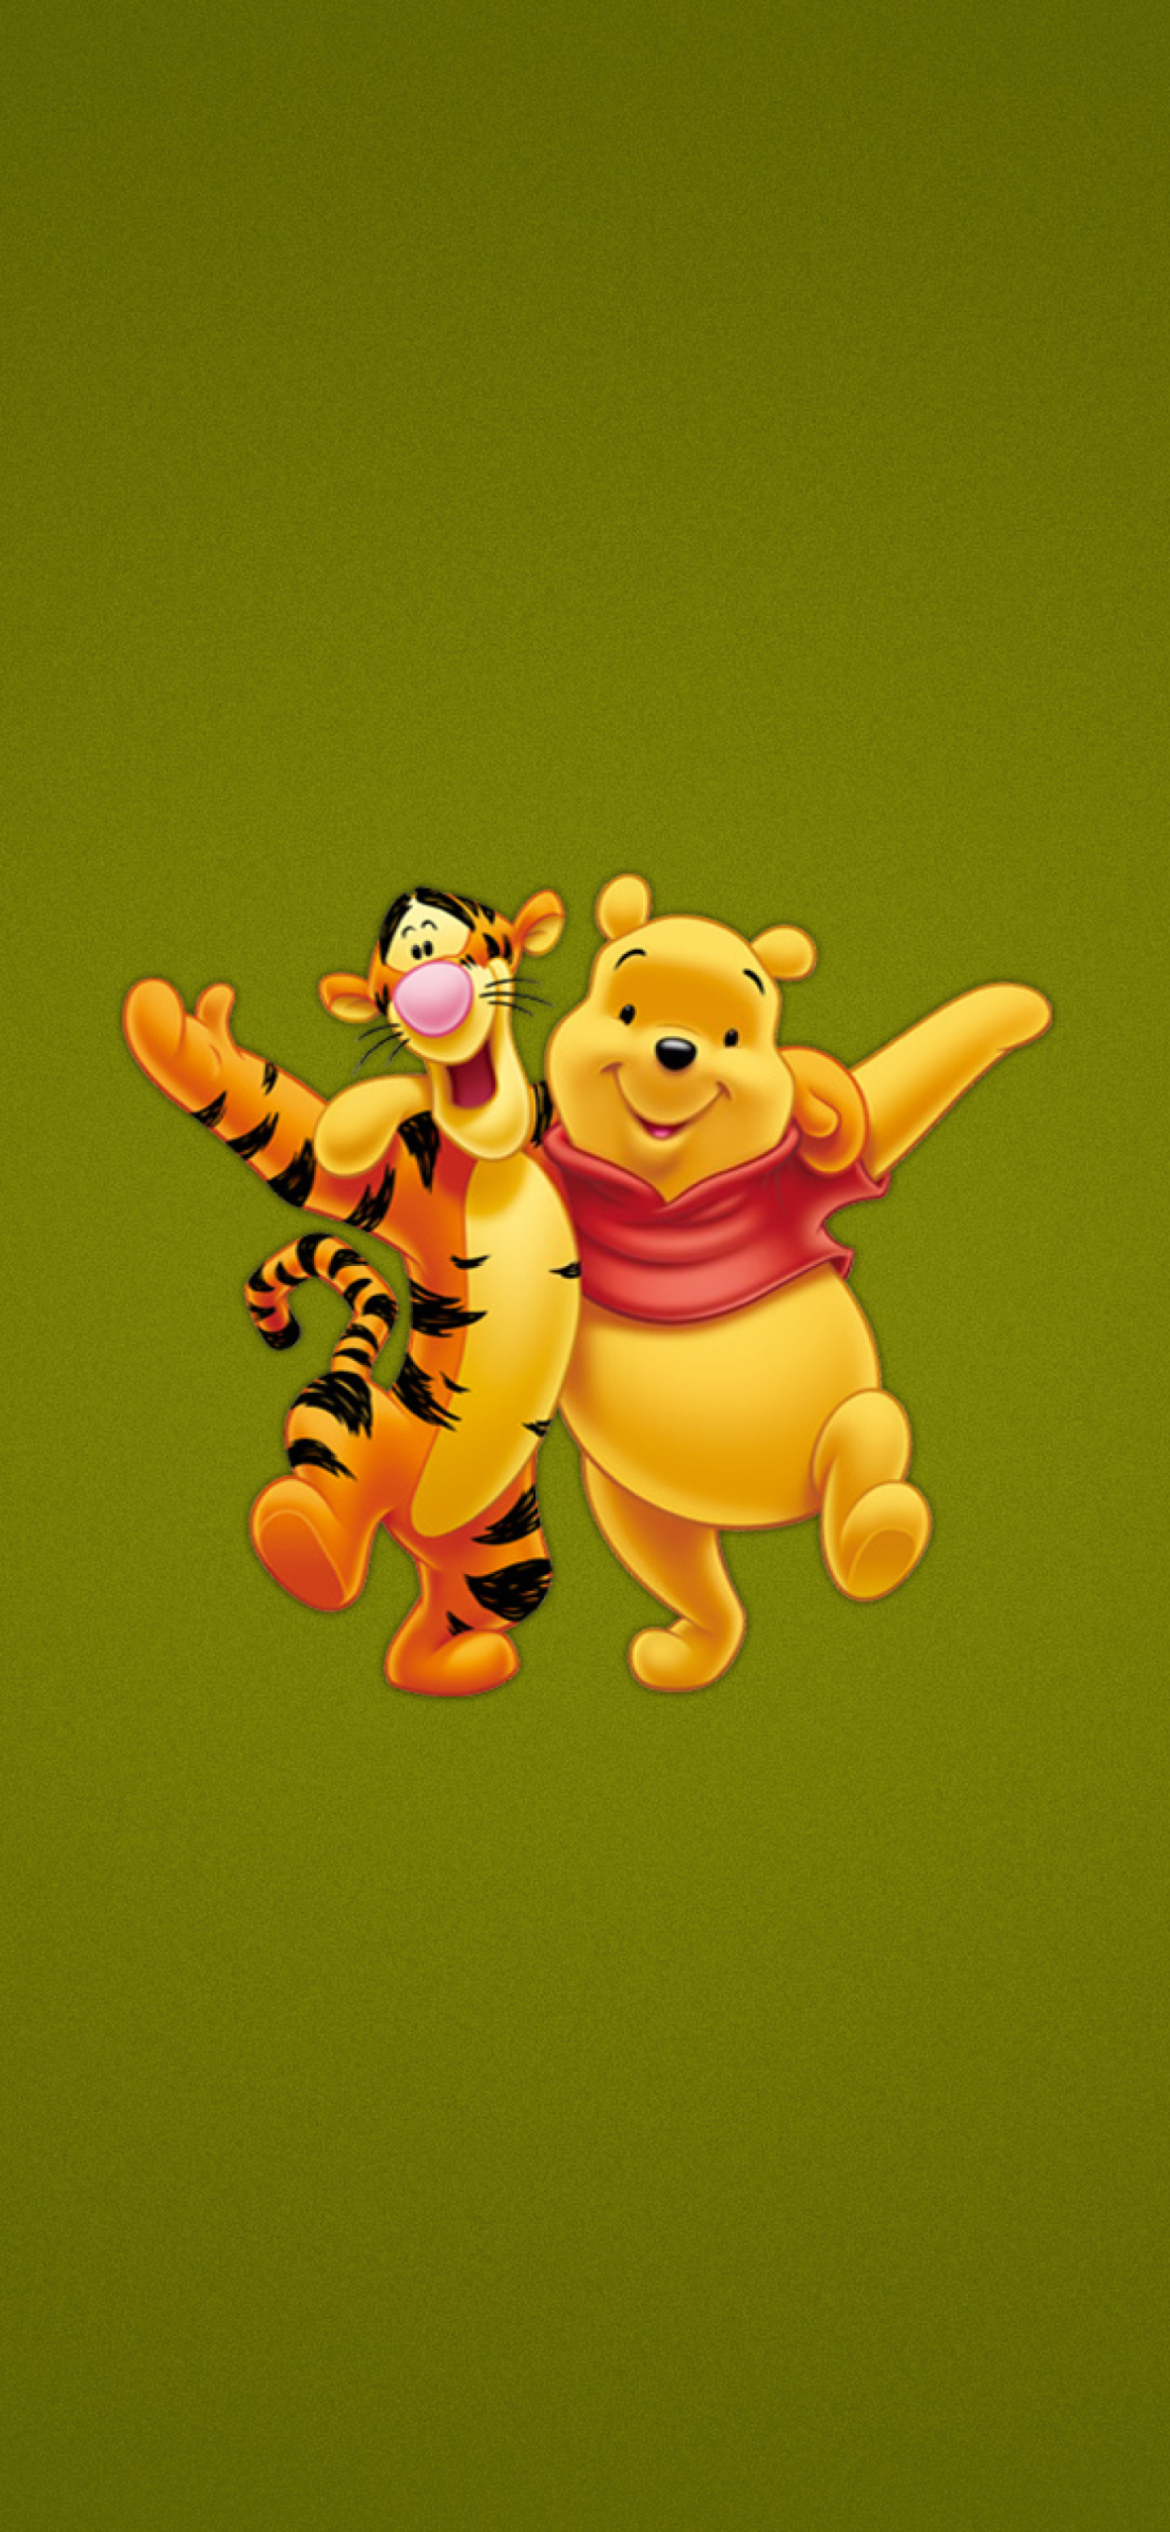 Обои Winnie The Pooh And Tiger 1170x2532